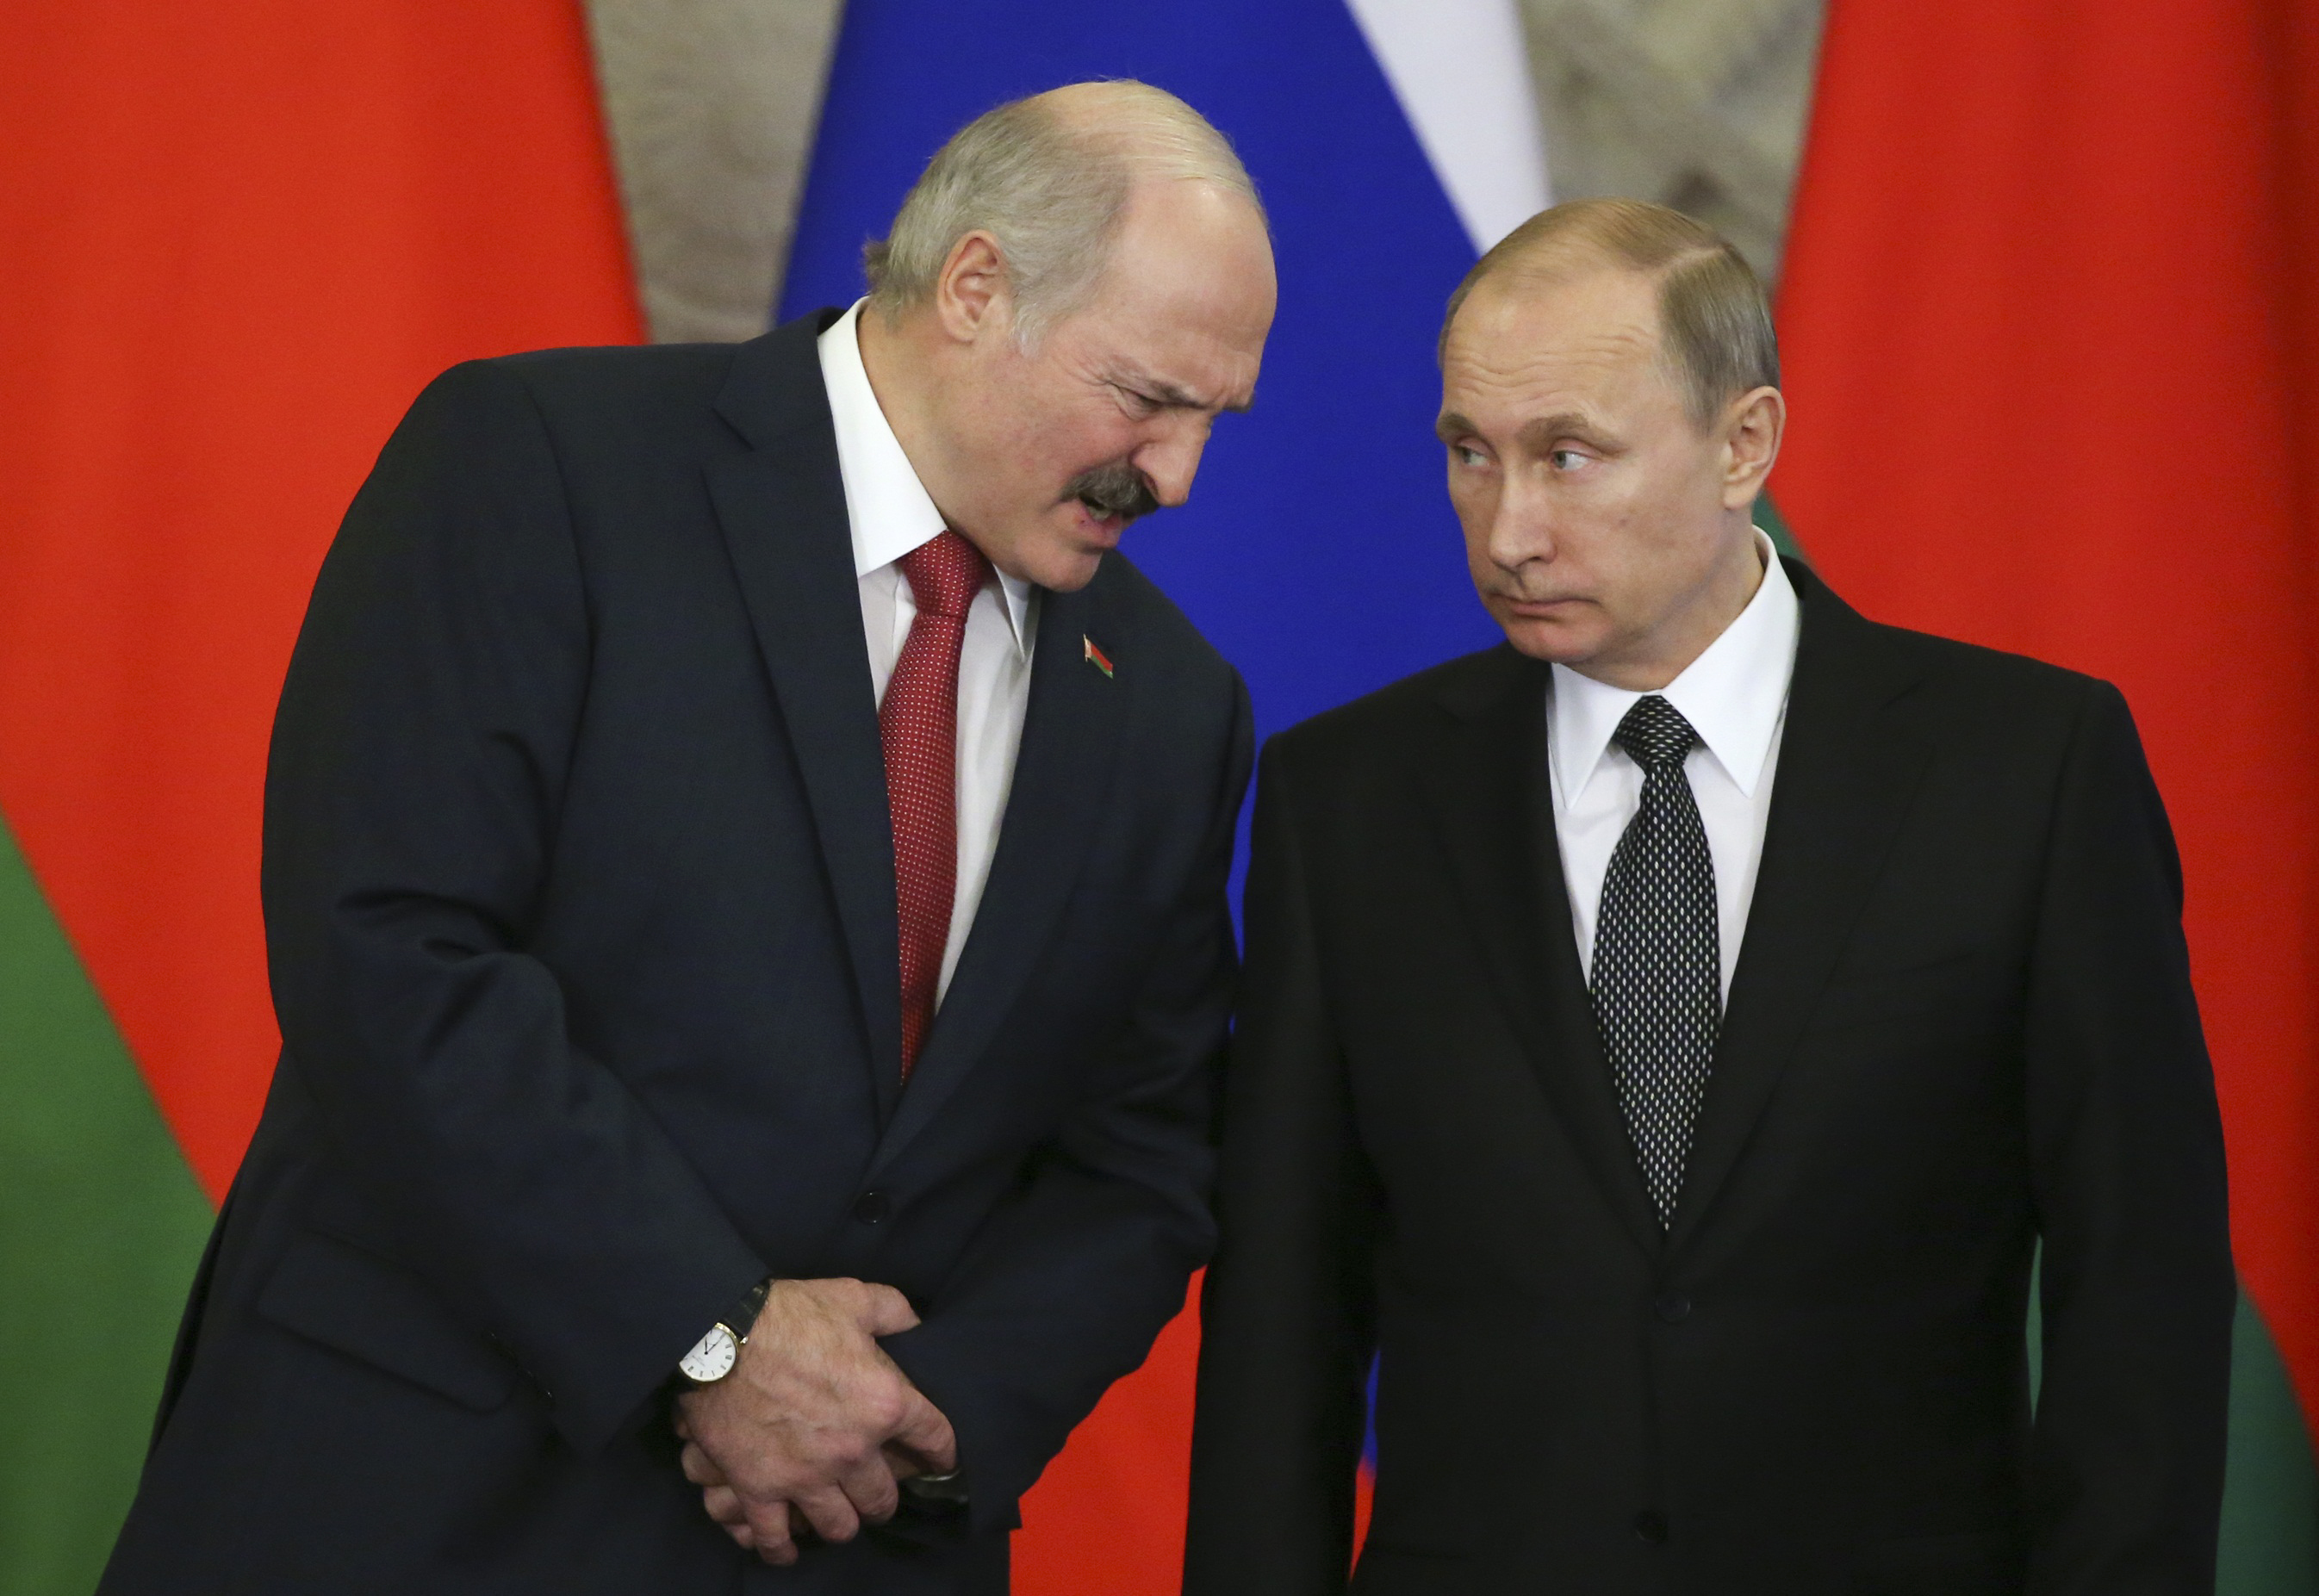 Der russische Präsident Wladimir Putin hört dem belarussischen Präsidenten Alexander Lukaschenko zu